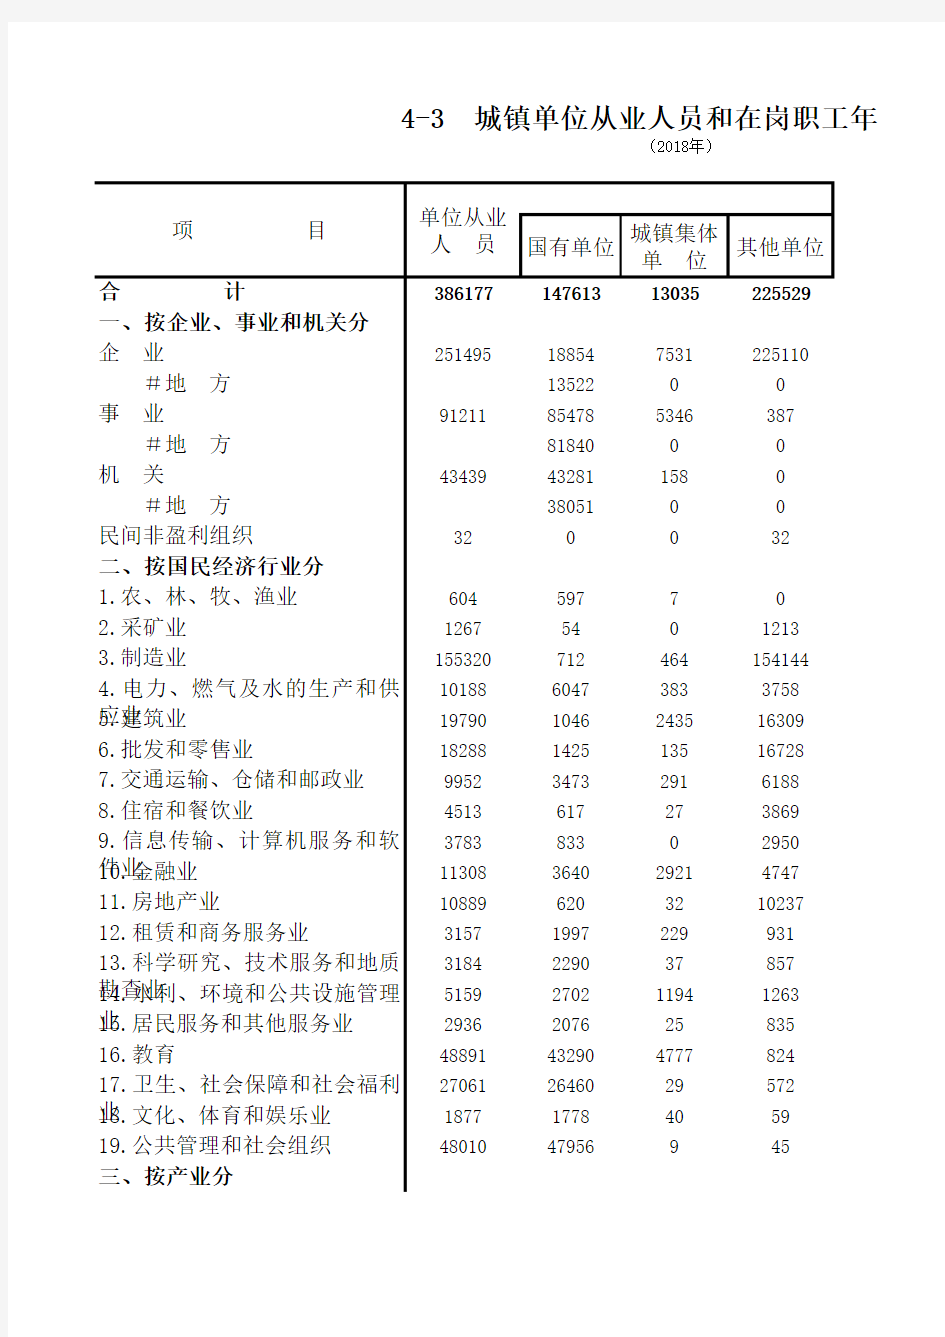 肇庆市社会经济发展指标数据：4-3 城镇单位从业人员和在岗职工年末人数(2018)